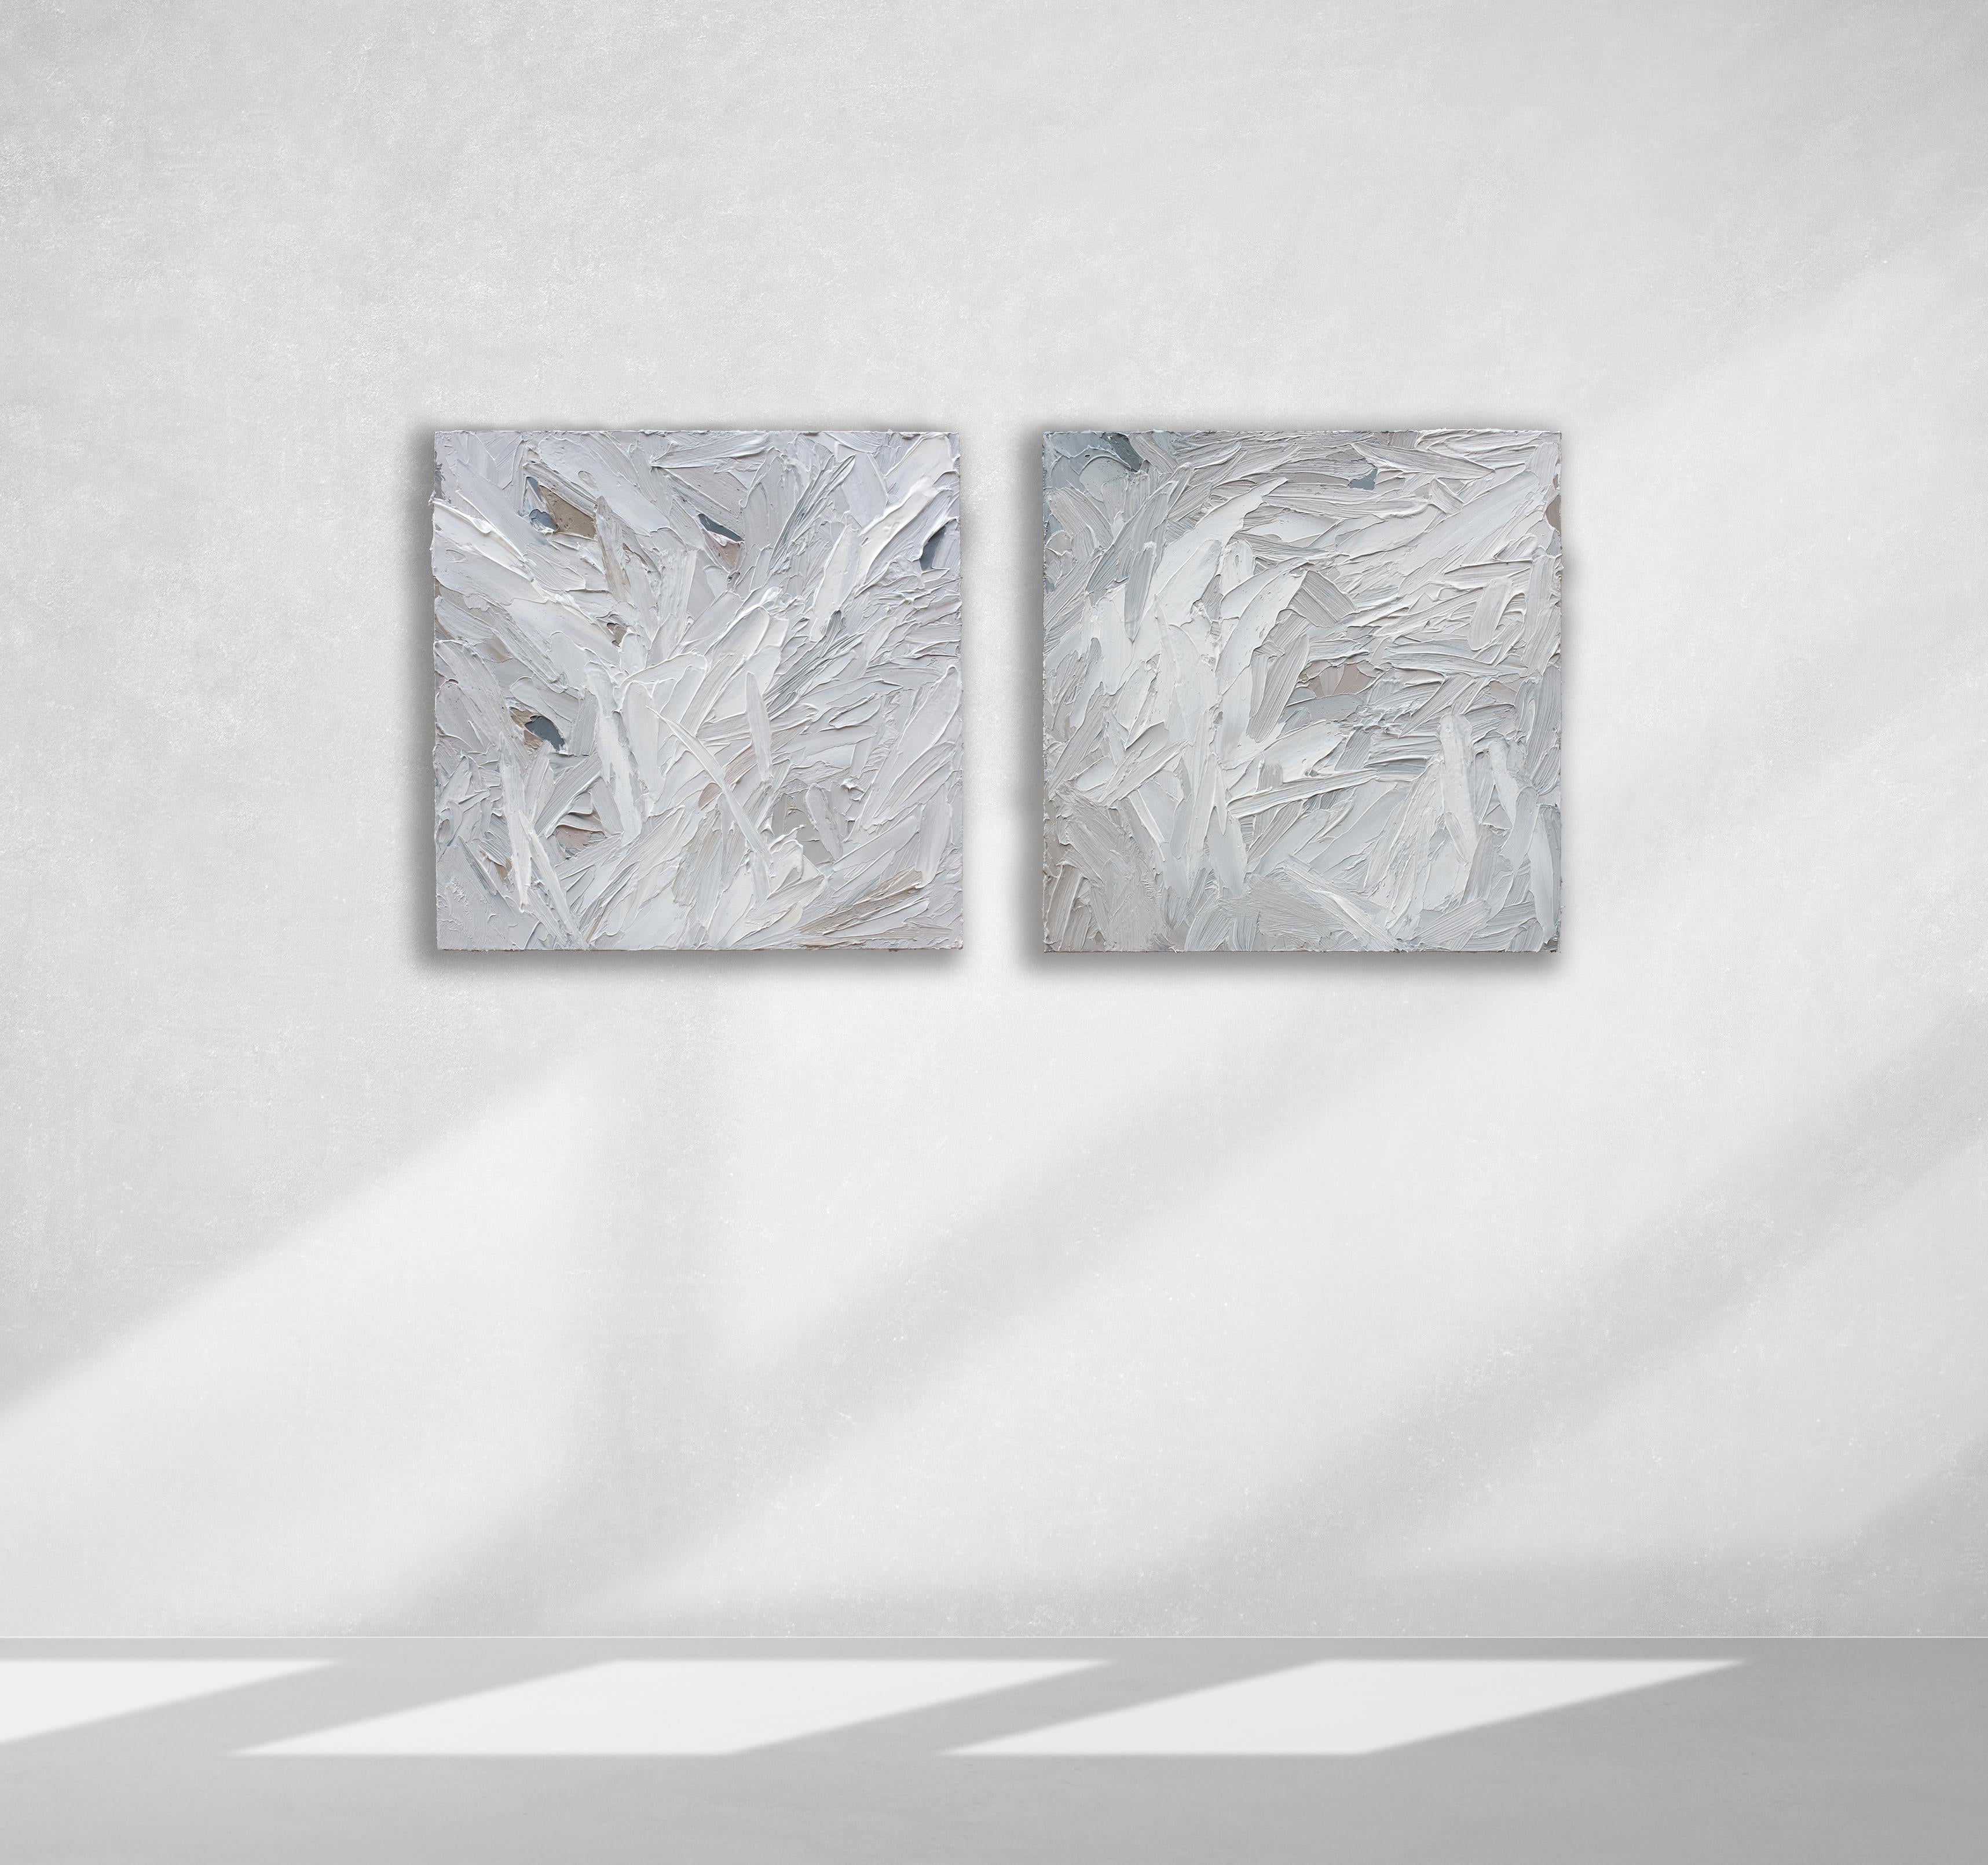 Cette paire de peintures abstraites texturées de Teodora Guererra présente une palette de gris légers avec de subtils accents chauds tout au long de la composition. L'artiste applique d'épais traits de peinture à l'aide d'un couteau à palette sur le